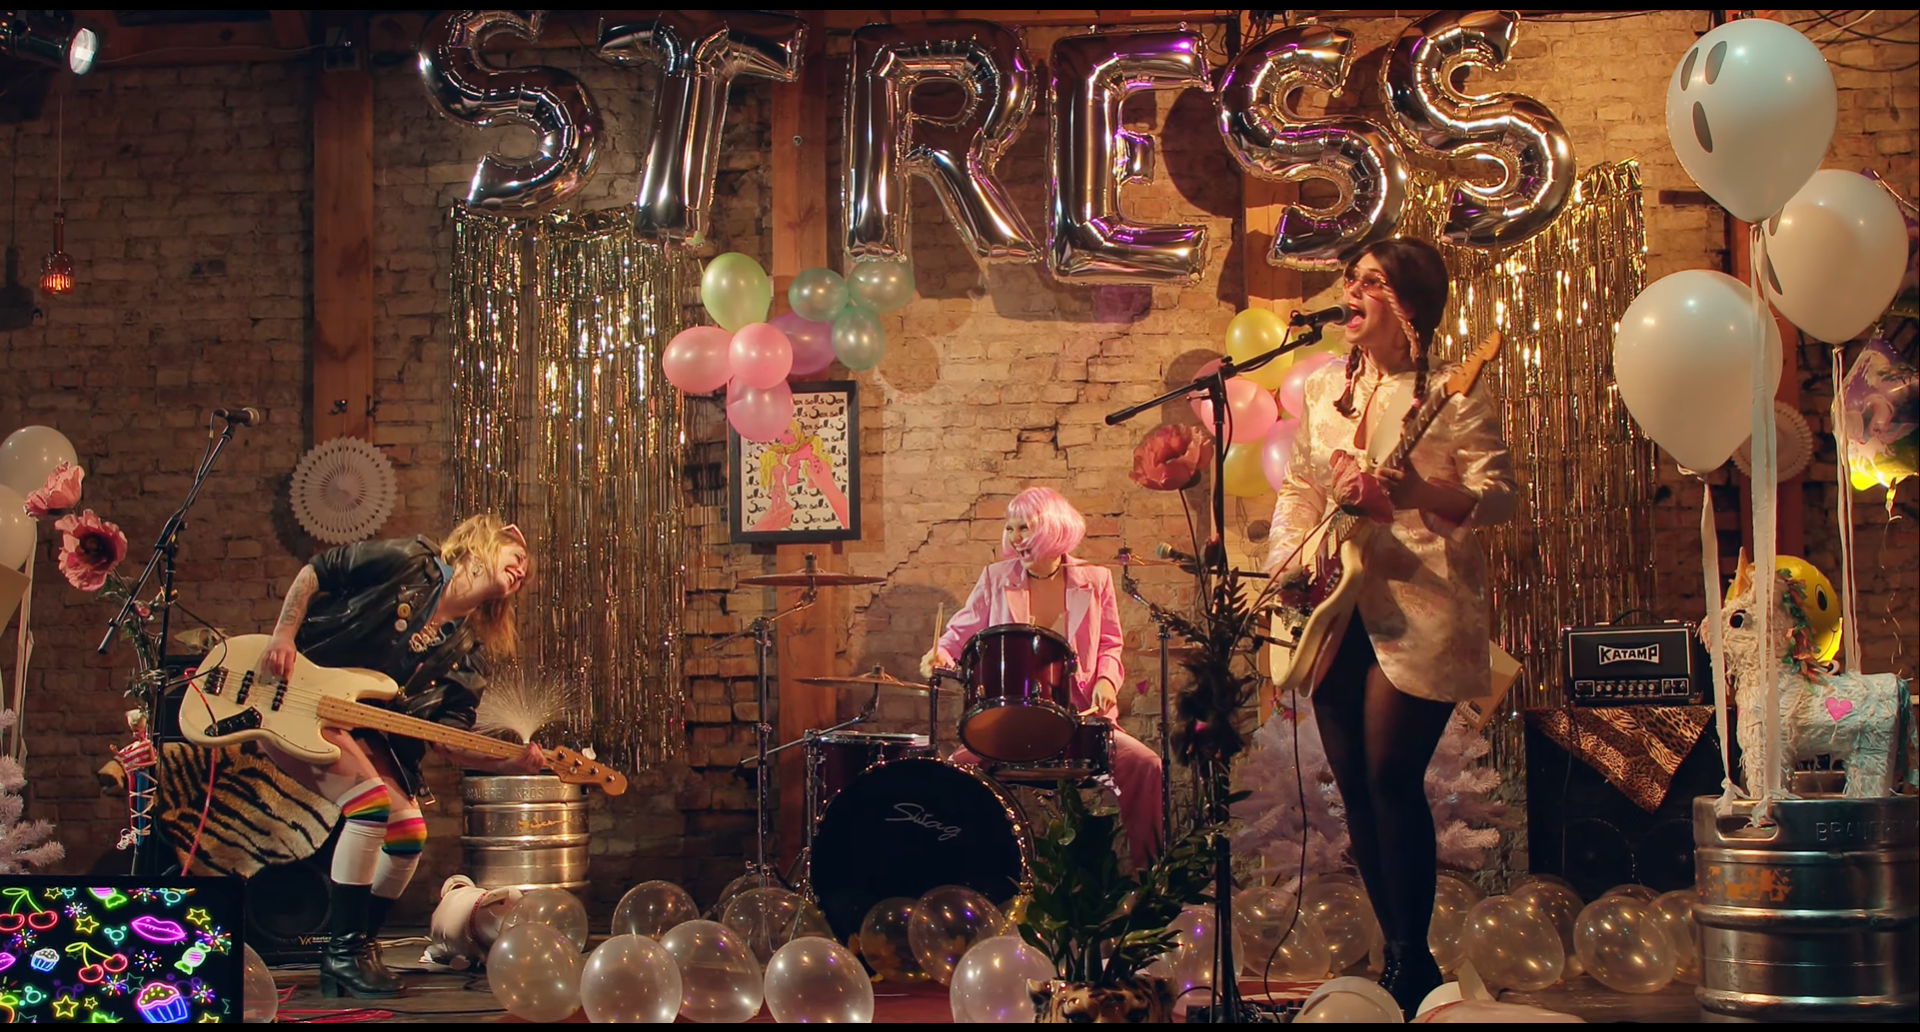 Kat, Mary e Karo no videoclipe "Bitter Lollipop". Cenário de festa, com balões ao fundo escrito "Stress" enquanto o grupo toca.